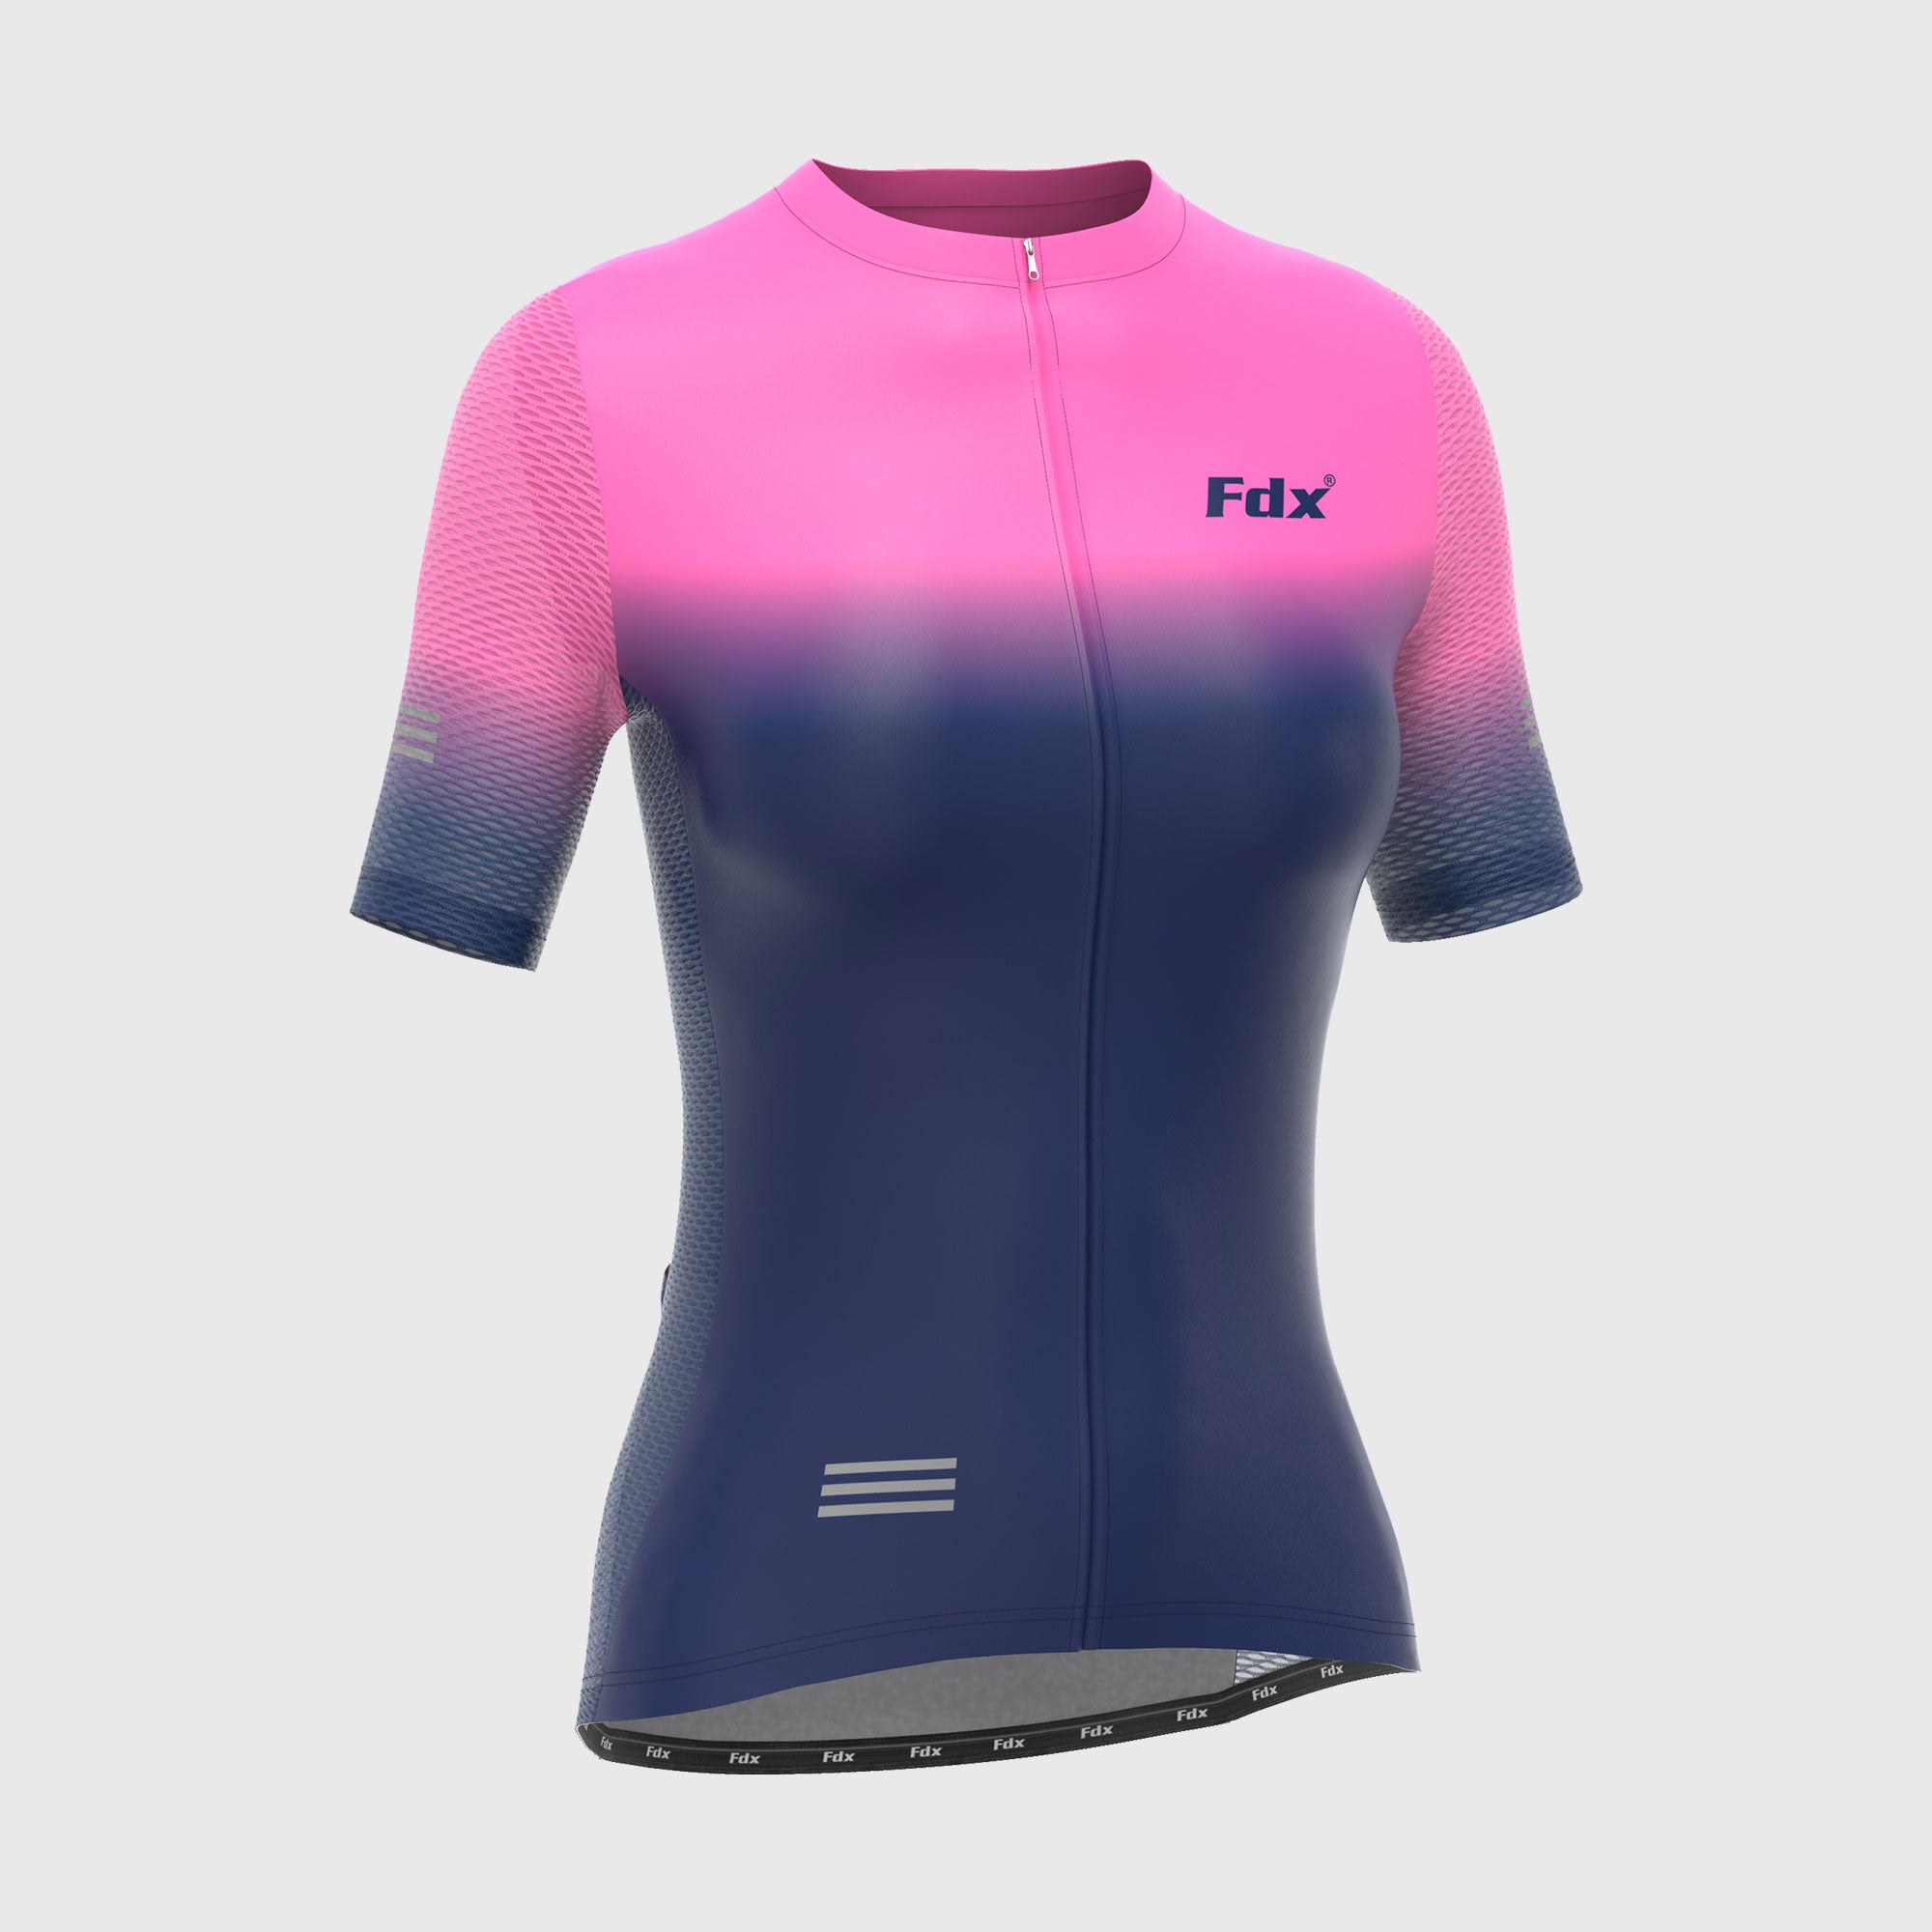 Fdx Women's Blue & Pink Short Sleeve Cycling Jersey for Summer Best Road Bike Wear Top Light Weight, Full Zipper, Pockets & Hi-viz Reflectors - Duo